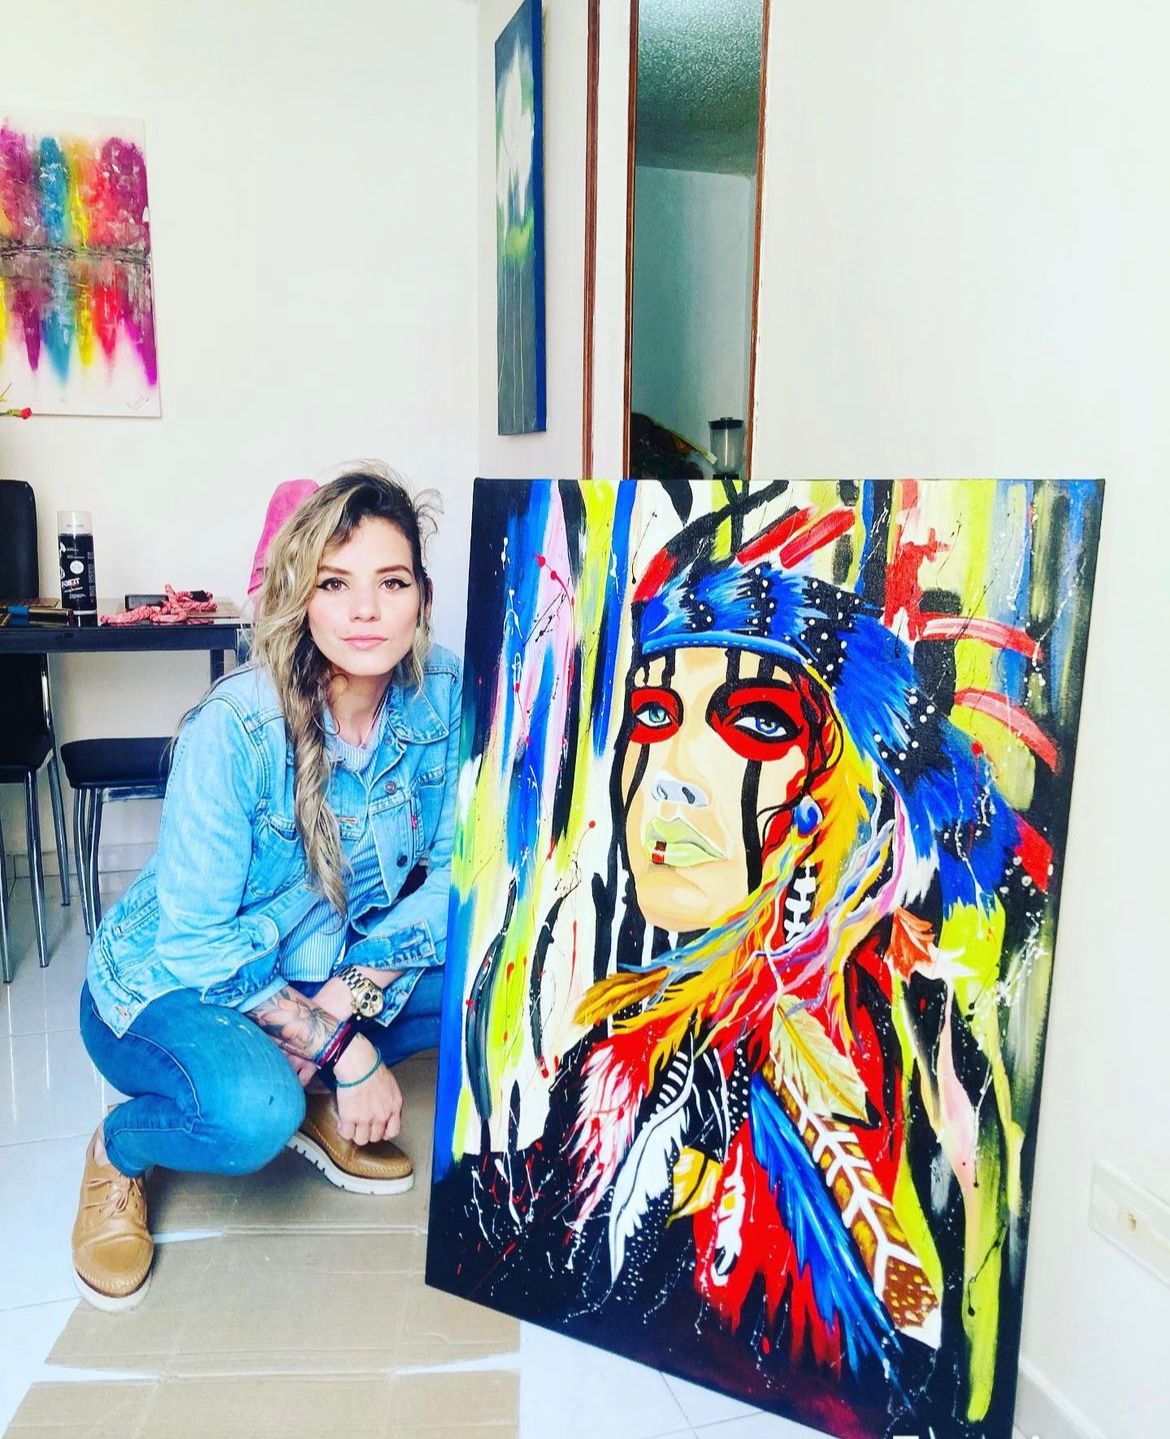 Lucia la artista colombiana de Santa Marta que cautiva con su creatividad sin límites